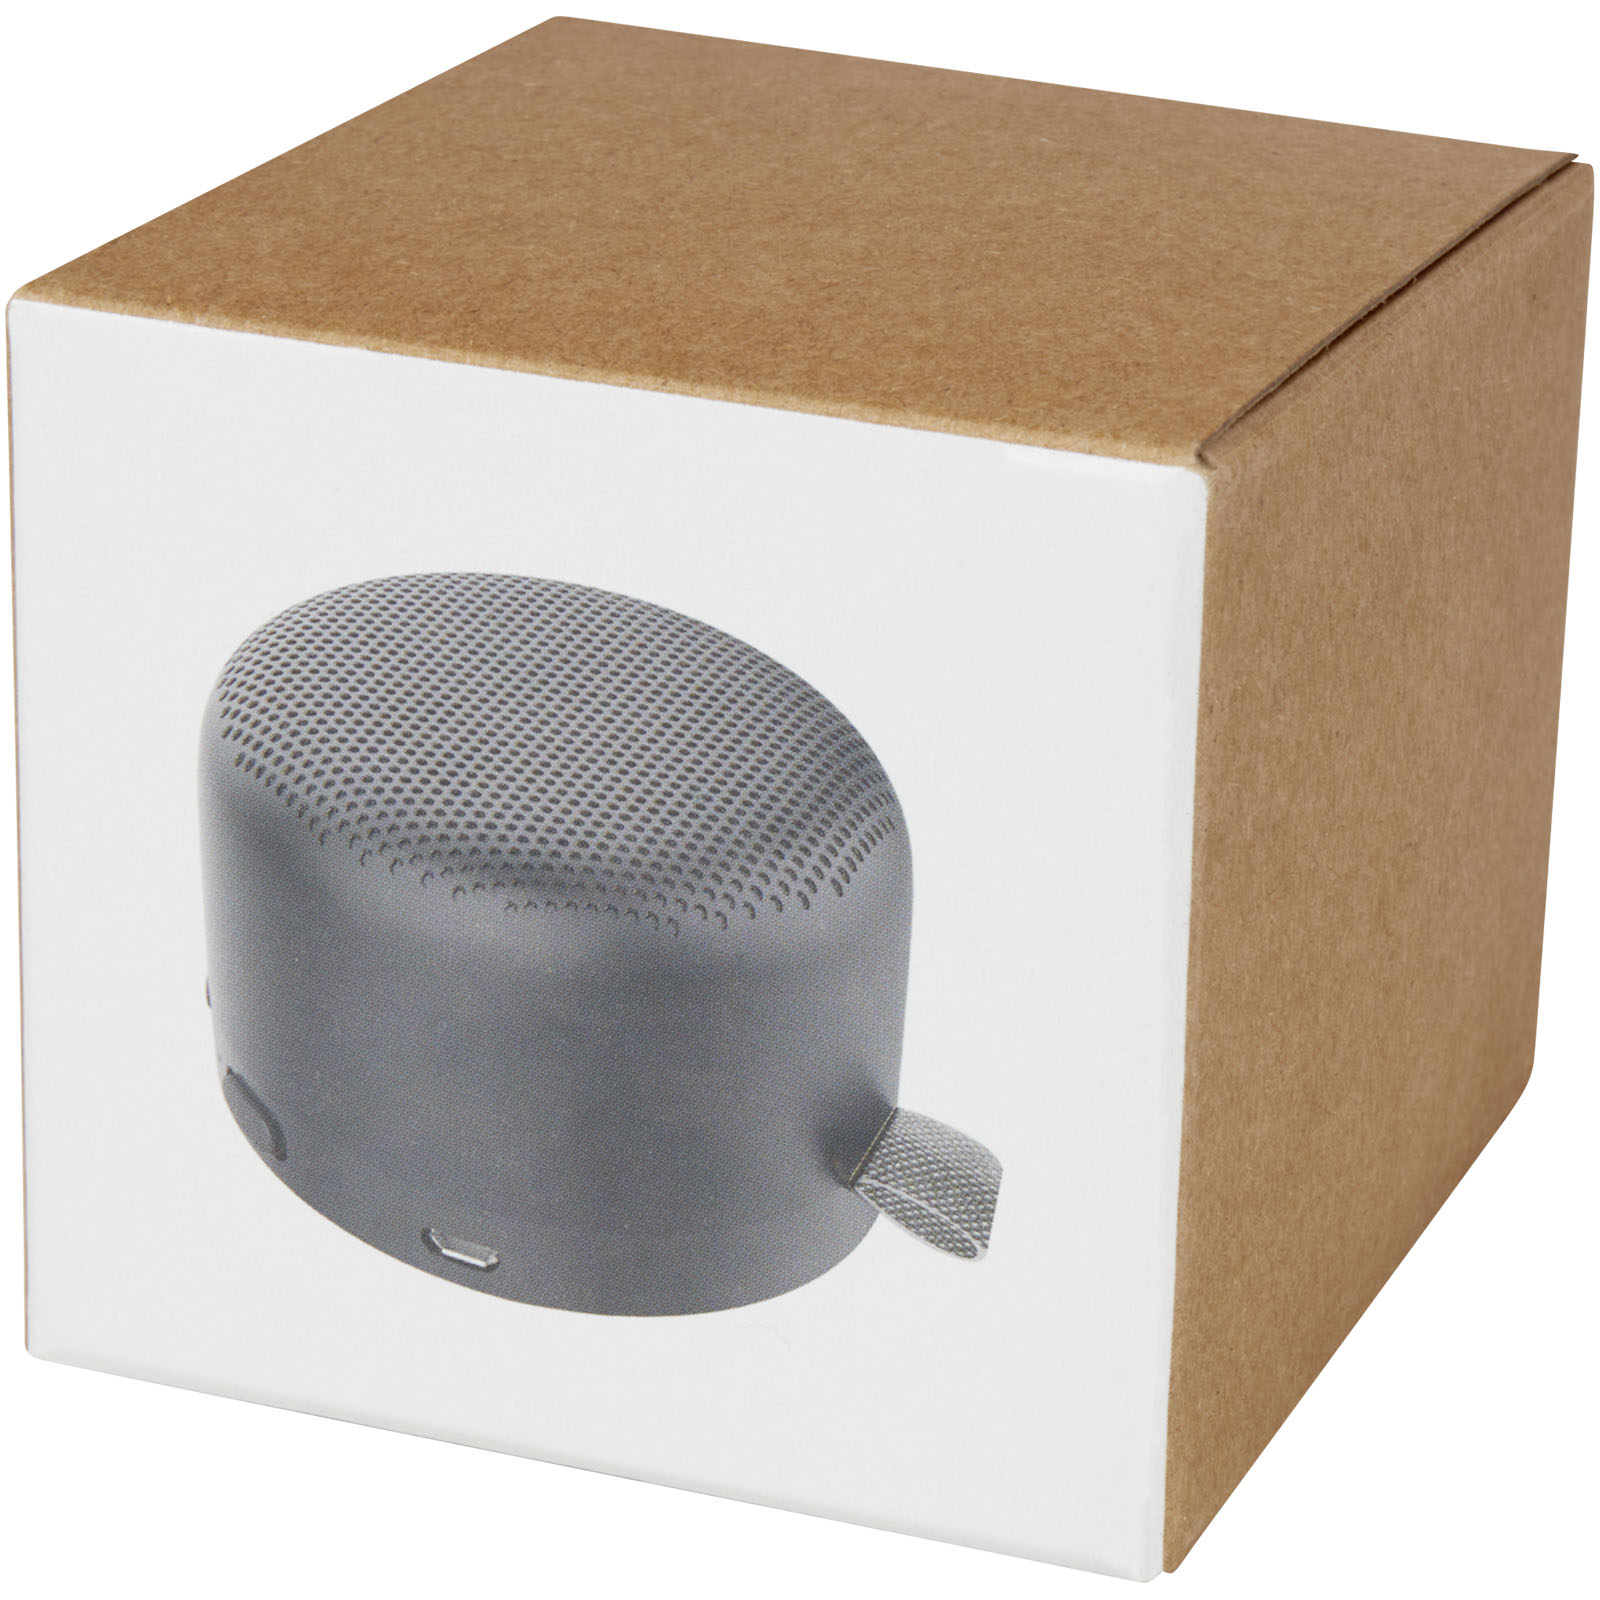 Advertising Speakers - Loop 5W recycled plastic Bluetooth speaker - 1